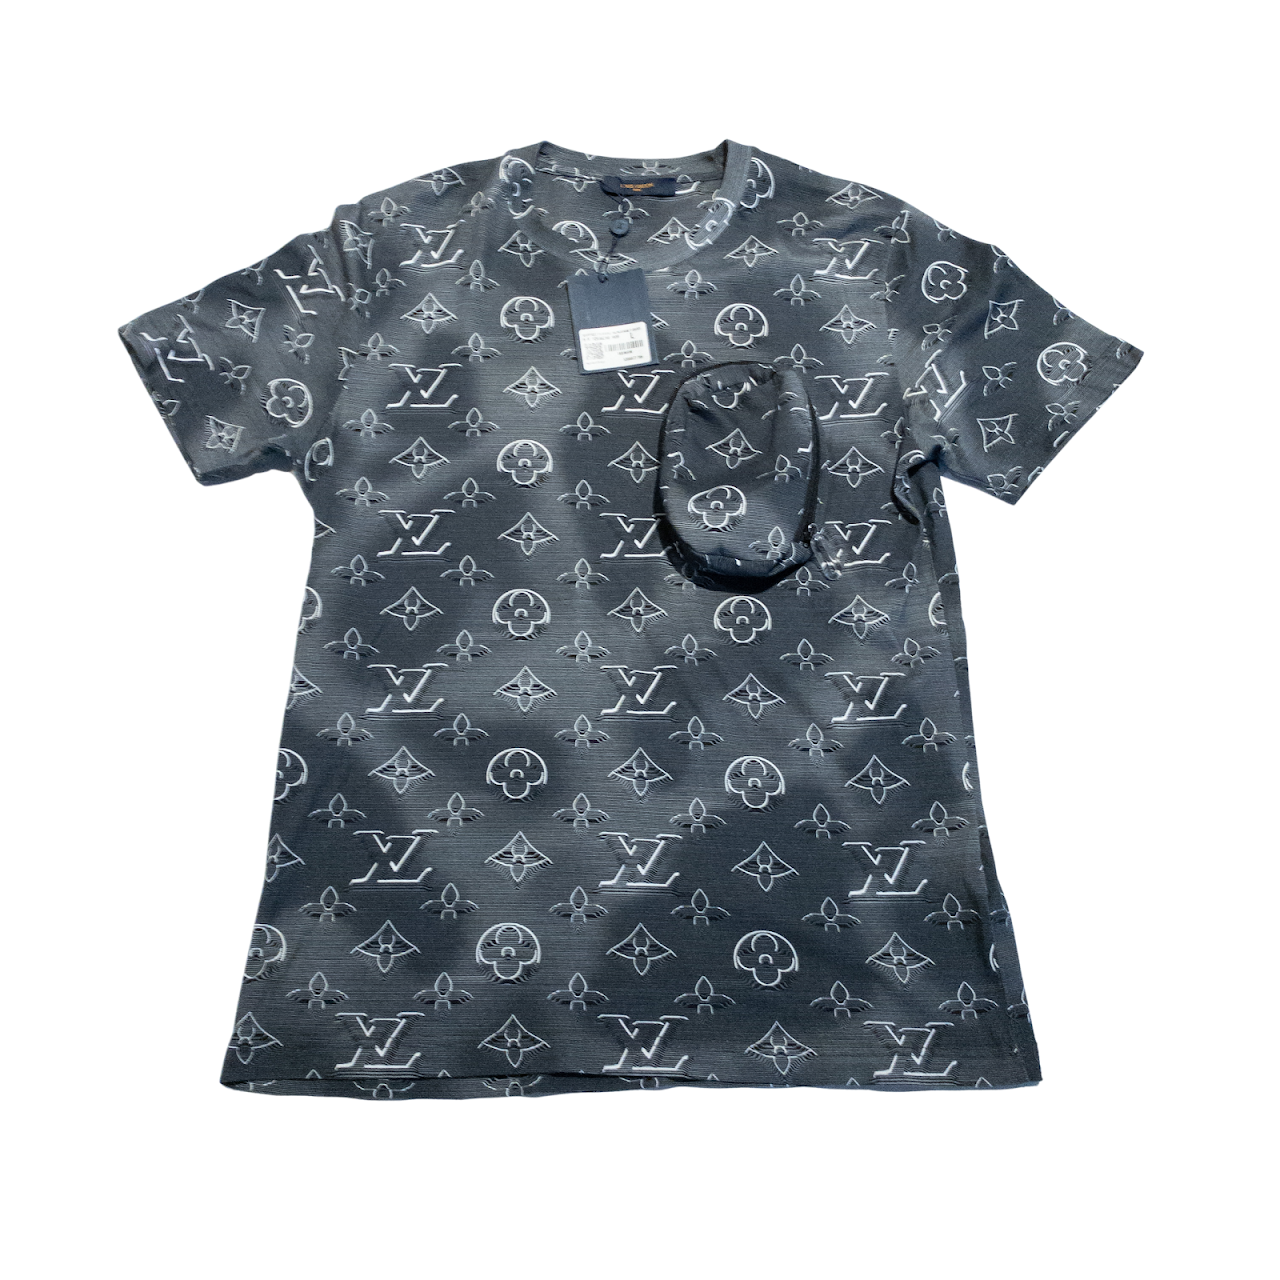 Louis Vuitton Monogram Accessory Pouch T- Shirt